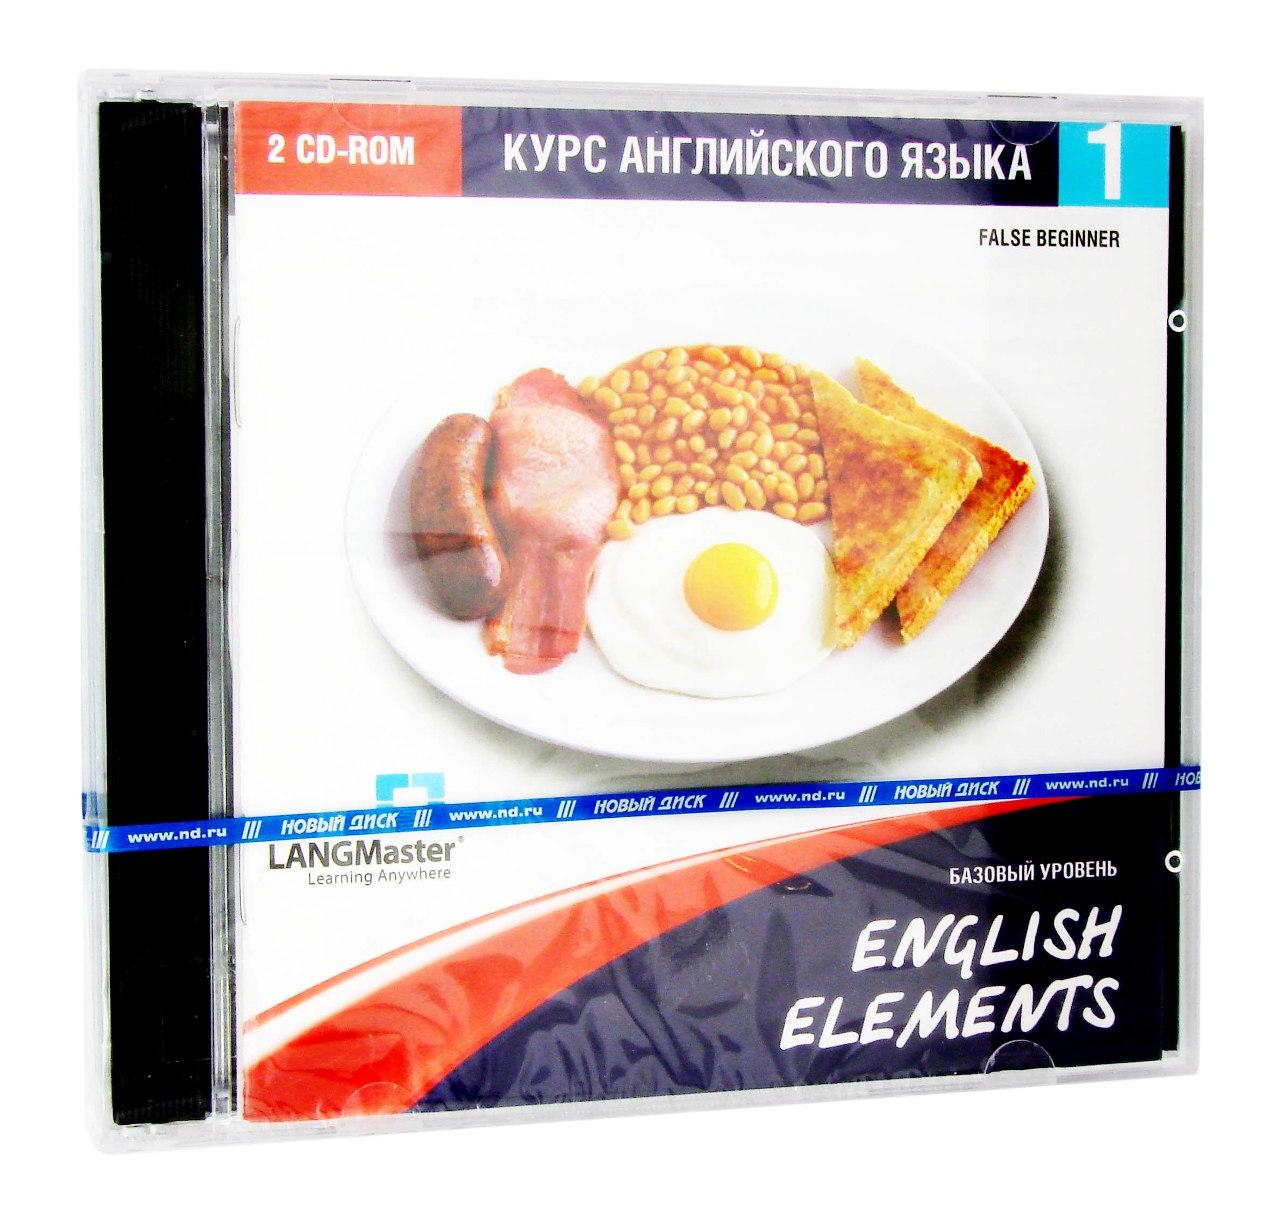 Компьютерный компакт-диск English Elements. Базовый уровень (ПК), фирма "Новый диск", 2CD